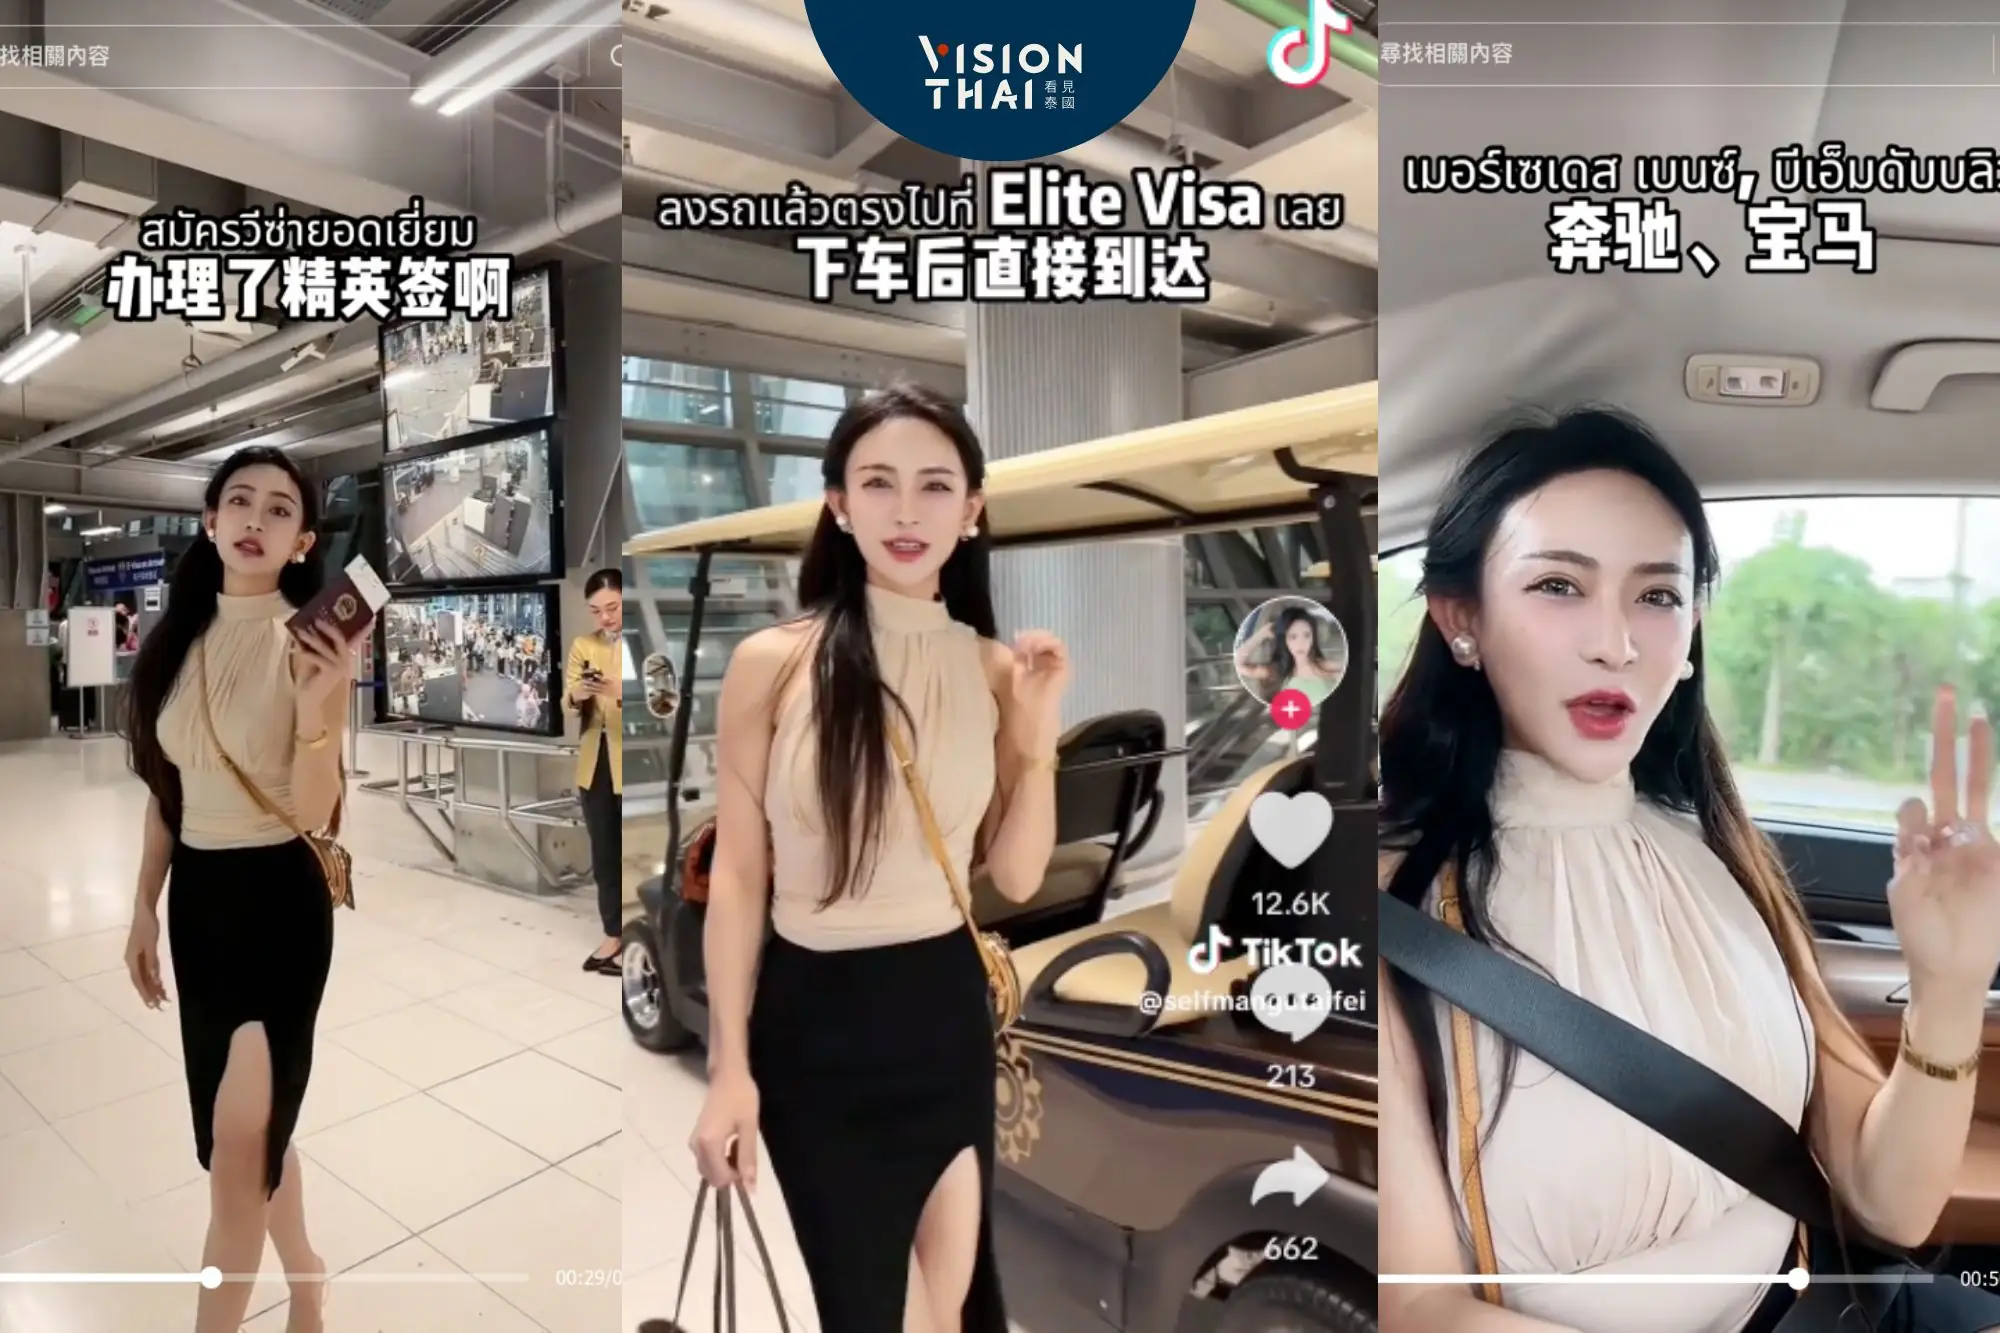 中國網紅讚泰國精英卡「絲滑入境」 VIP服務影片瘋傳（圖片來源：tiktok影片截圖）